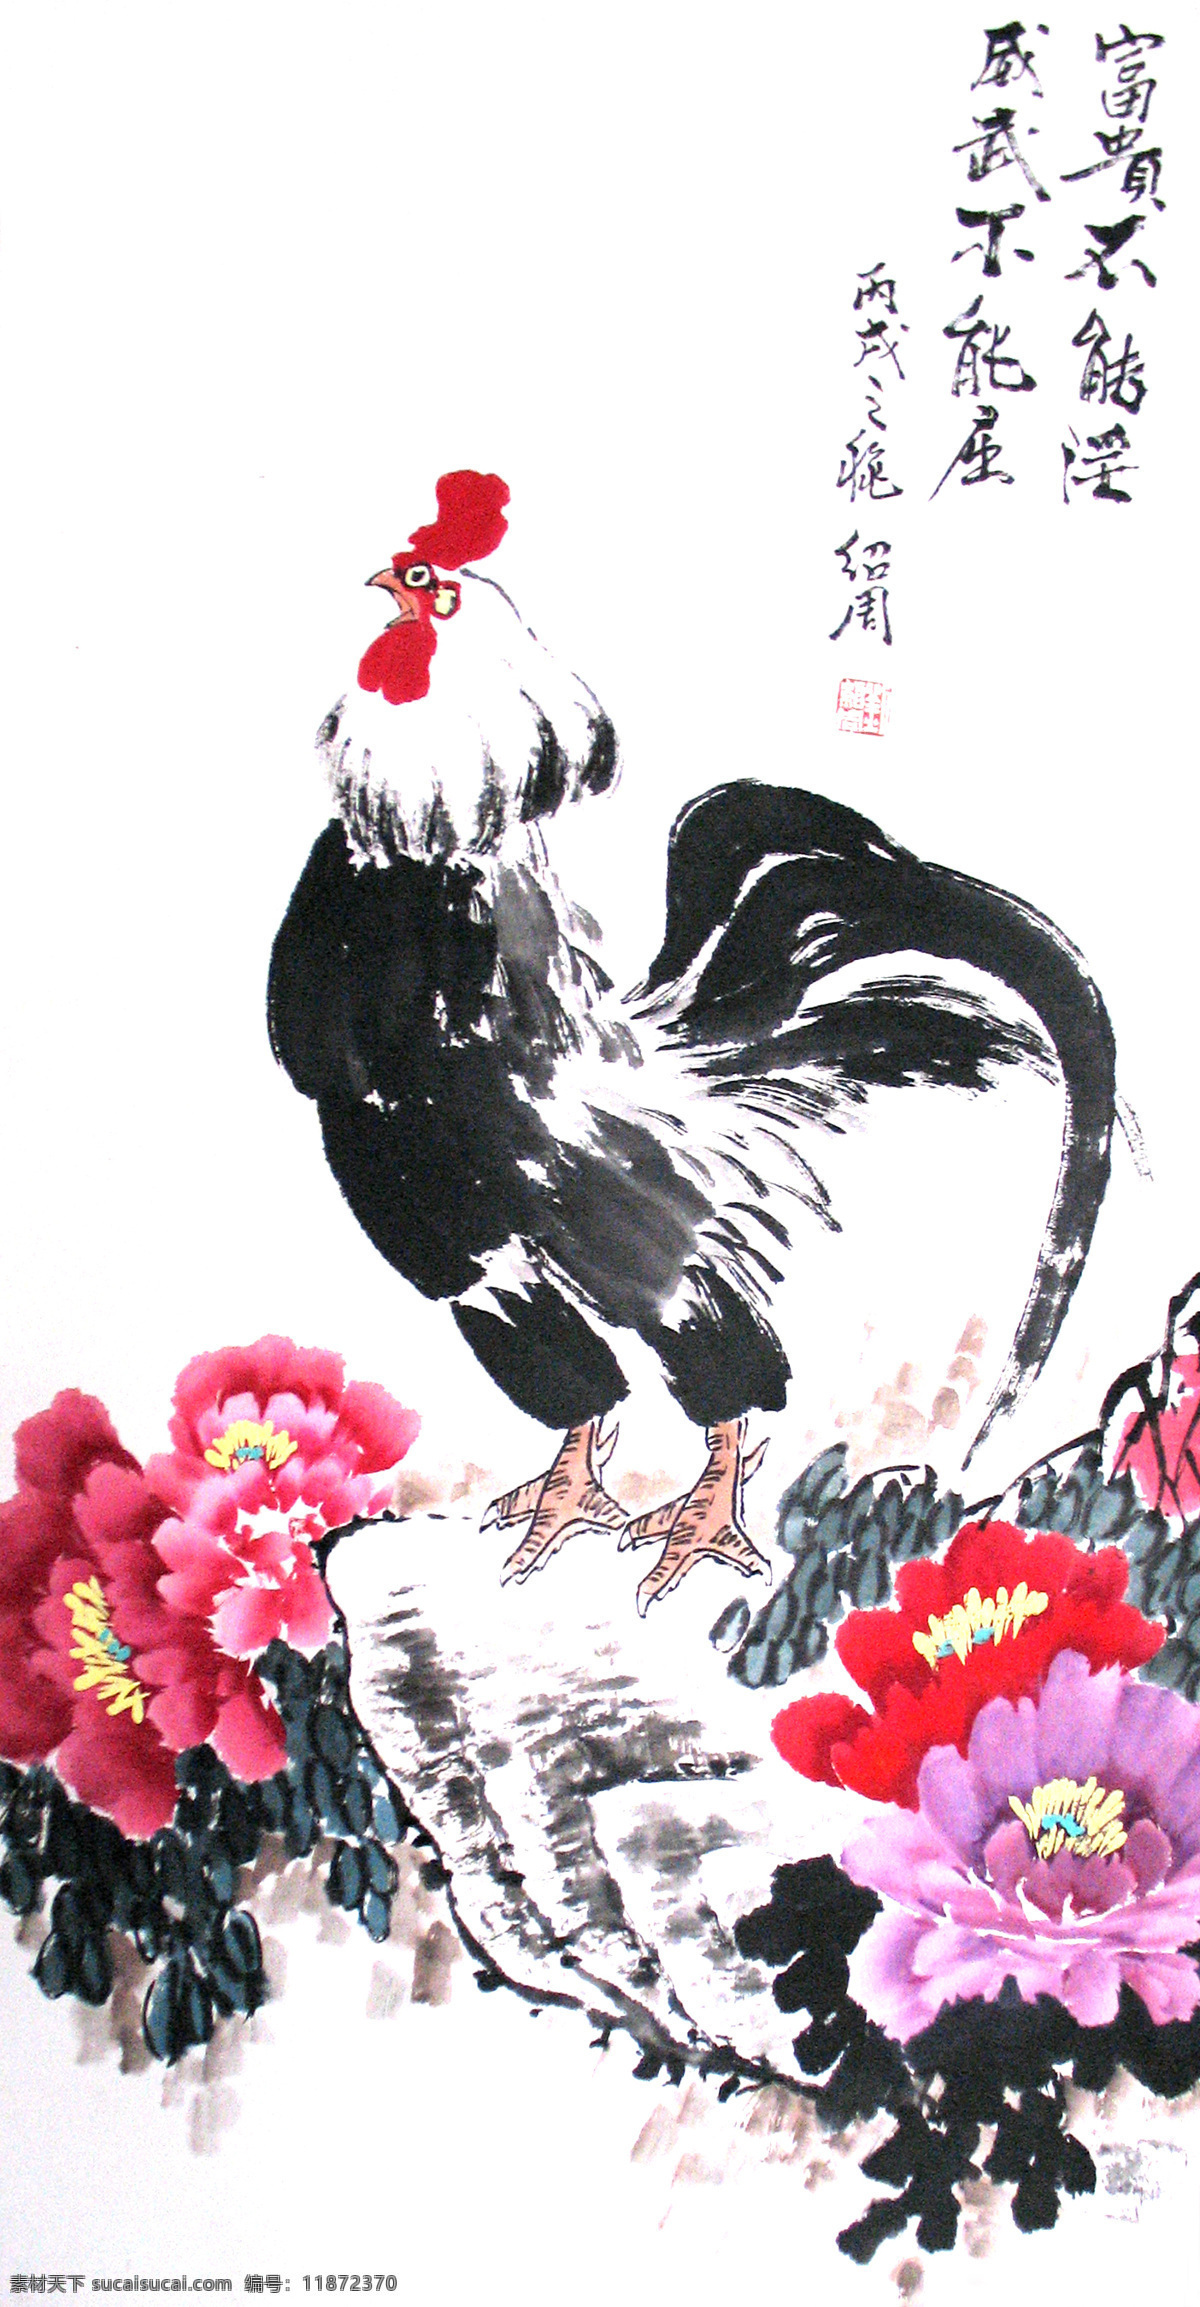 公鸡 牡丹 水墨画 中国画 书法 绘画 中国风 中国元素 富贵不能淫 威武不能屈 石头 绘画书法 文化艺术